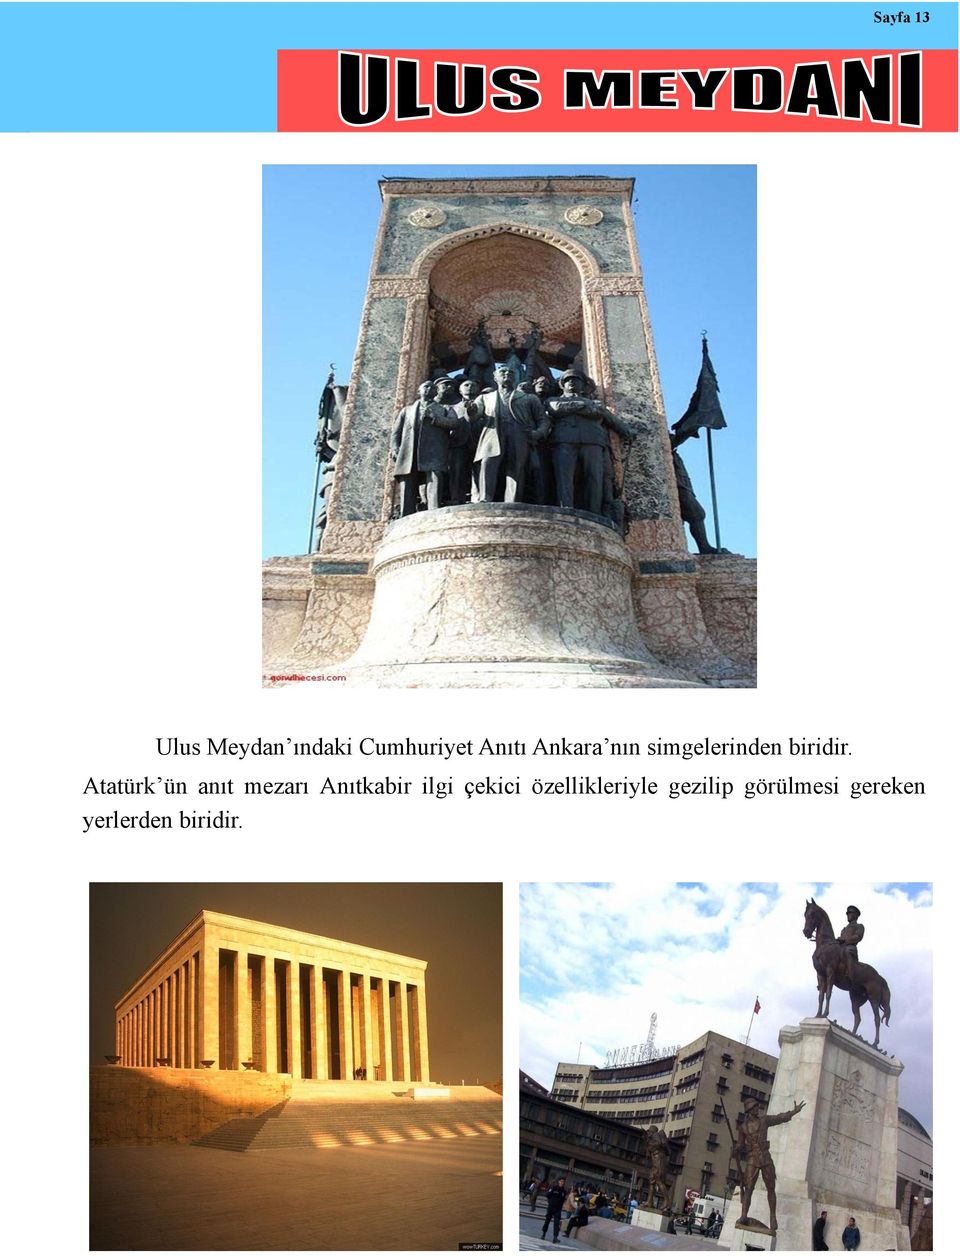 Atatürk ün anıt mezarı Anıtkabir ilgi çekici